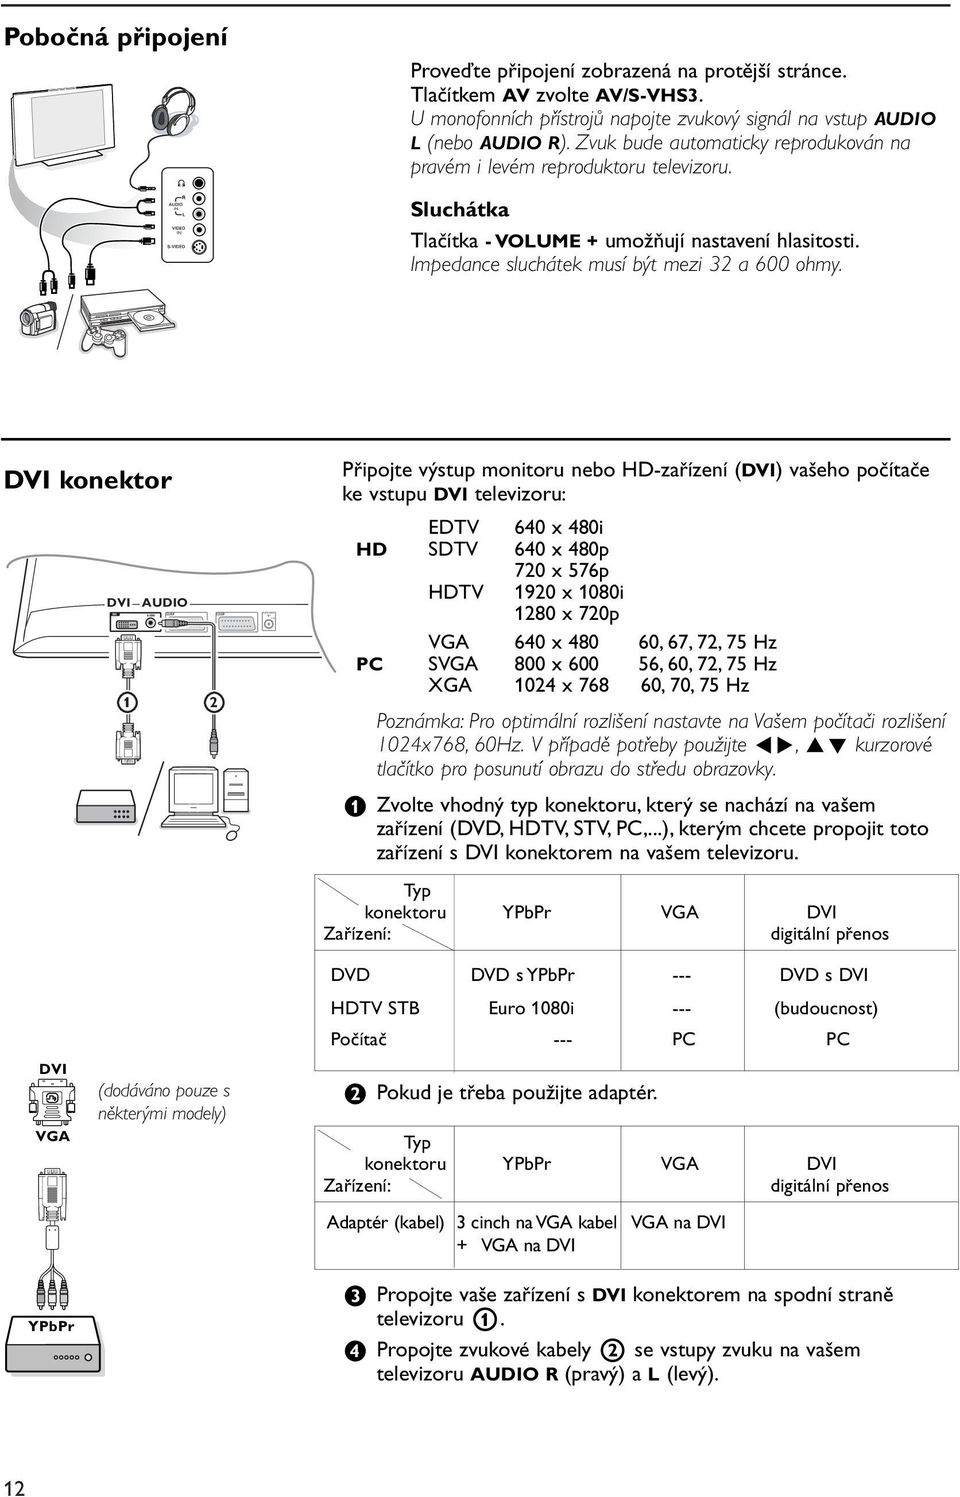 Sluchátka Tlačítka - VOLUME + umožňují nastavení hlasitosti. Impedance sluchátek musí být mezi 32 a 600 ohmy. DVI konektor DVI.